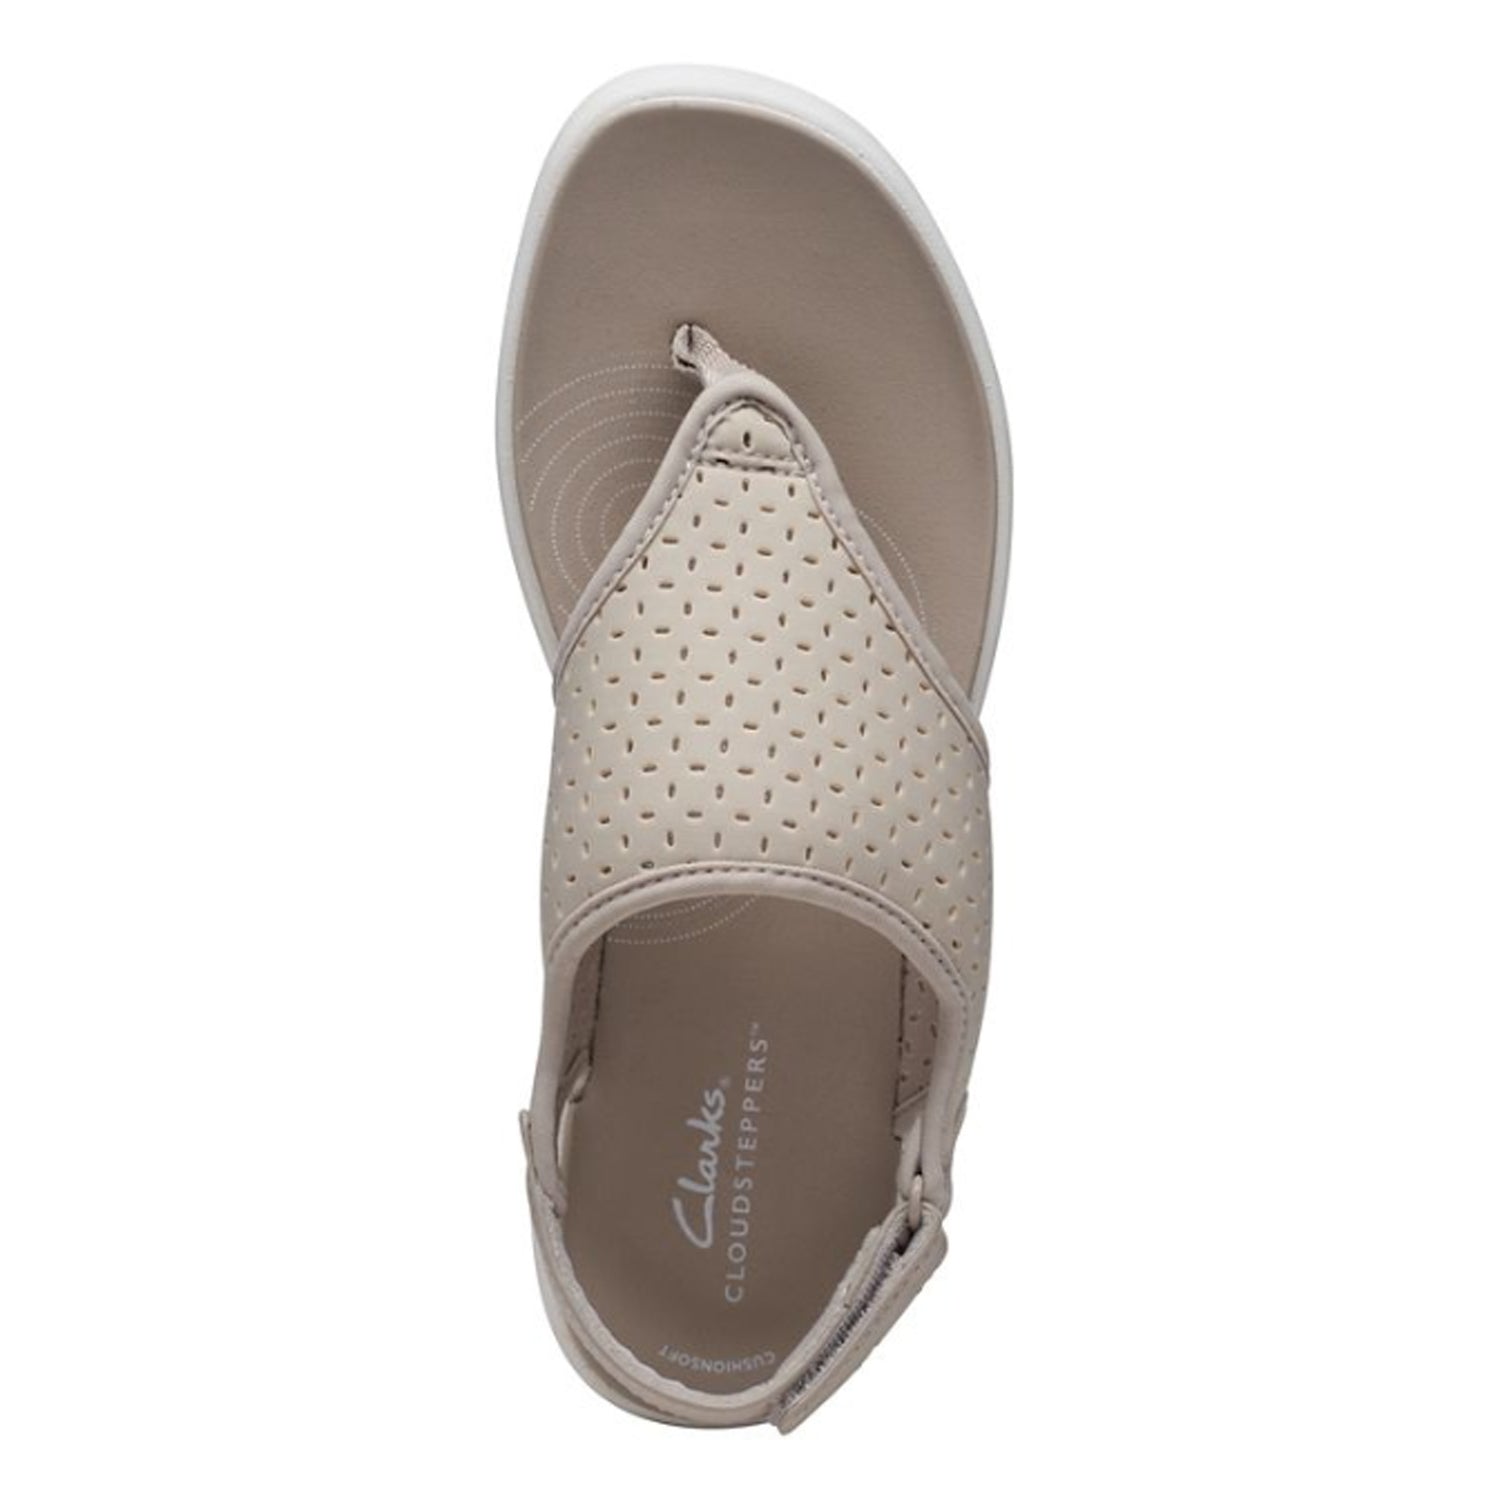 Peltz Shoes  Women's Clarks Drift Blossom Sandal TAUPE 26171819